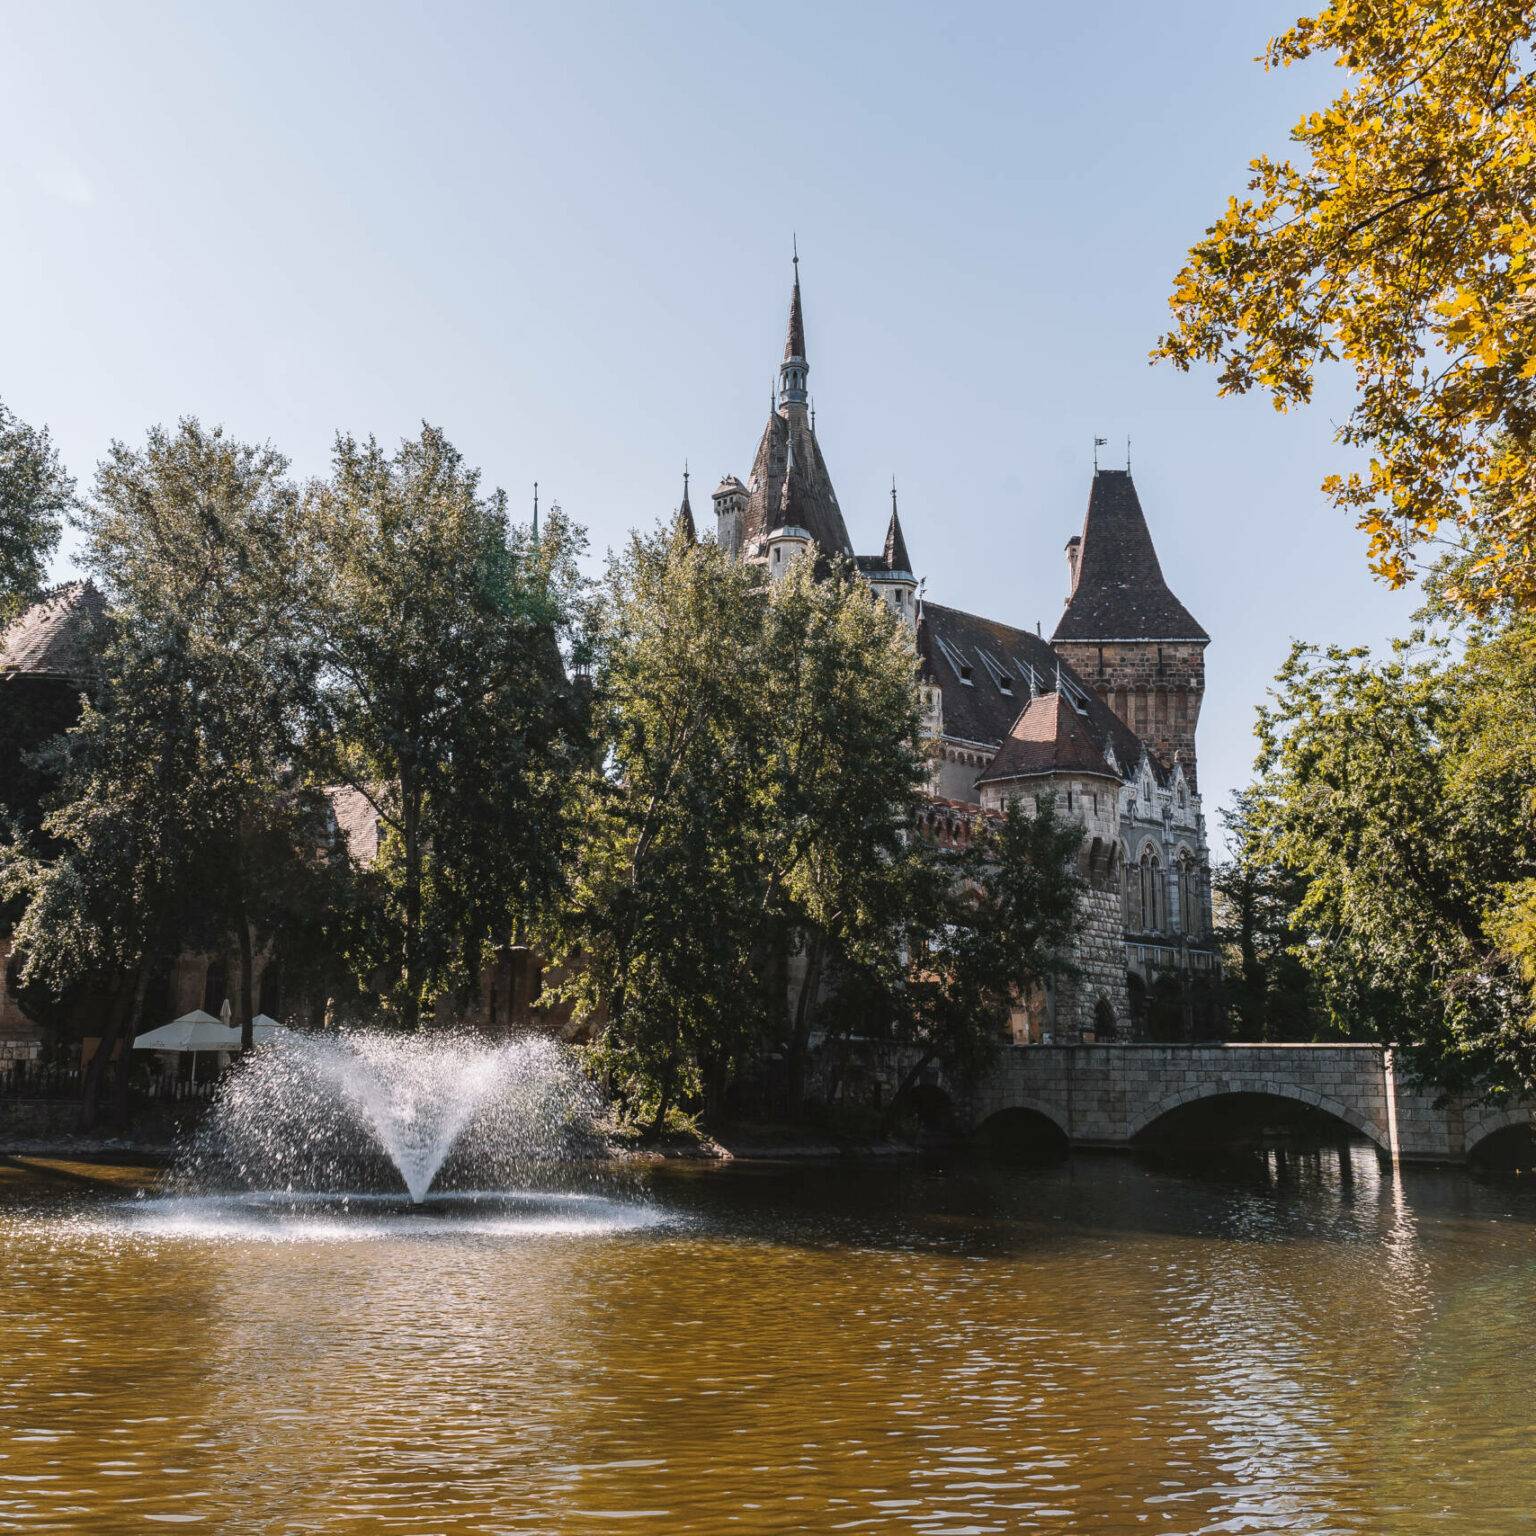 Die alte Burg Vajdahunyad in Budapest versteckt sich hinter einem See und Bäumen.